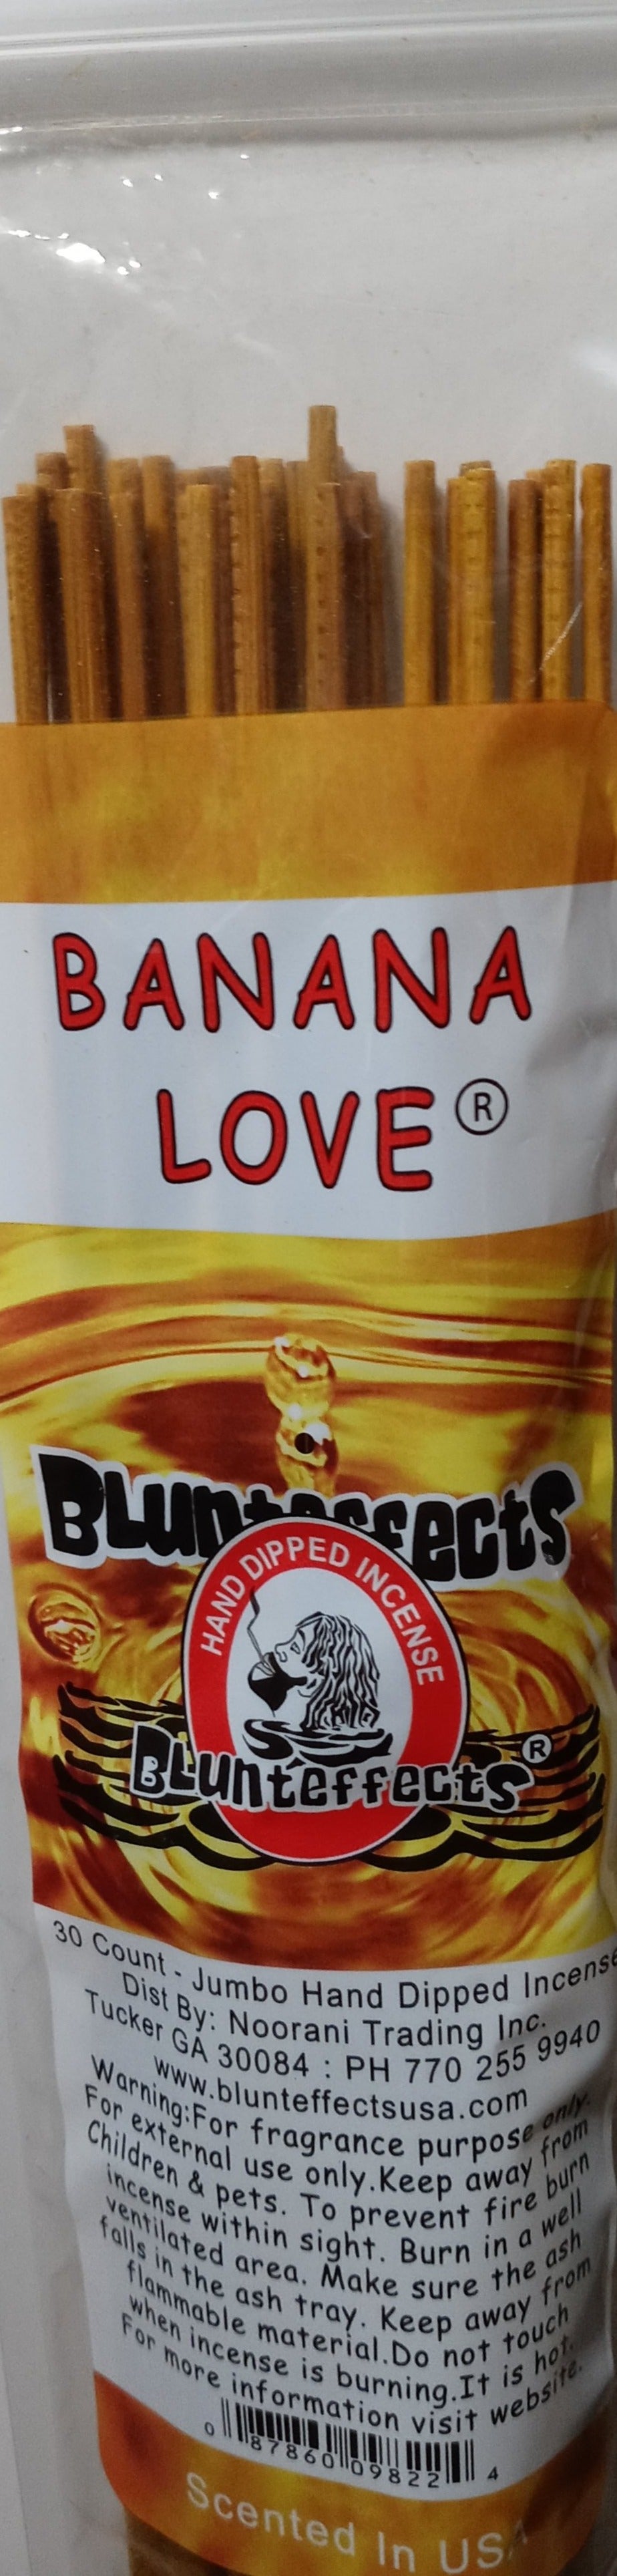 Blunteffects Banana Love 19 Inch Jumbo Incense Sticks -- 30 Sticks